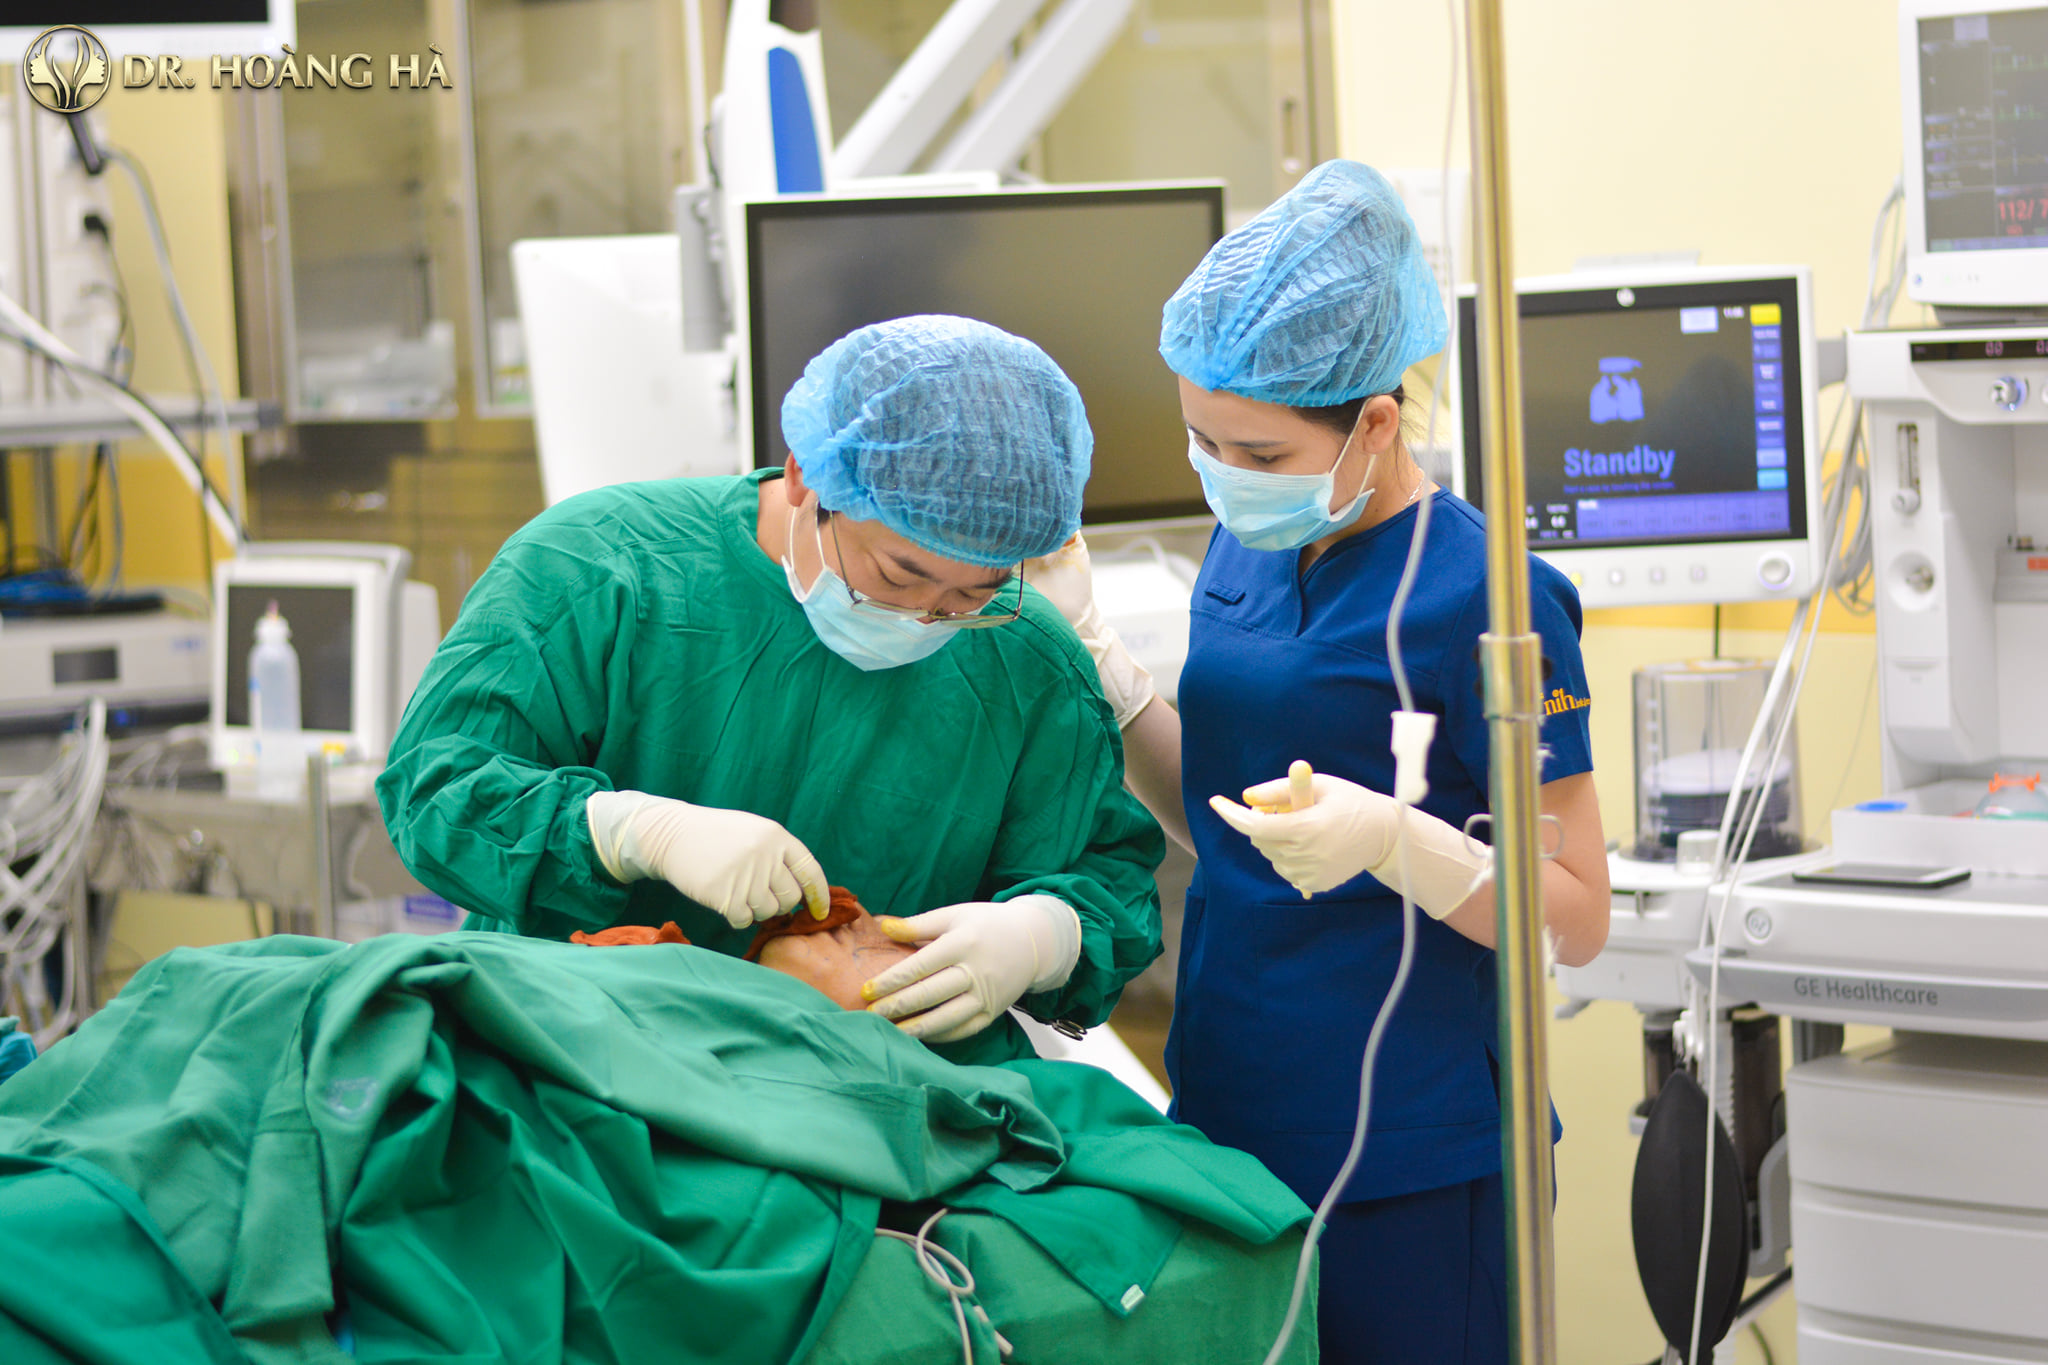 Trang thiết bị hiện đại uy tín đảm bảo an toàn cho khách hàng trong cuộc phẫu thuật